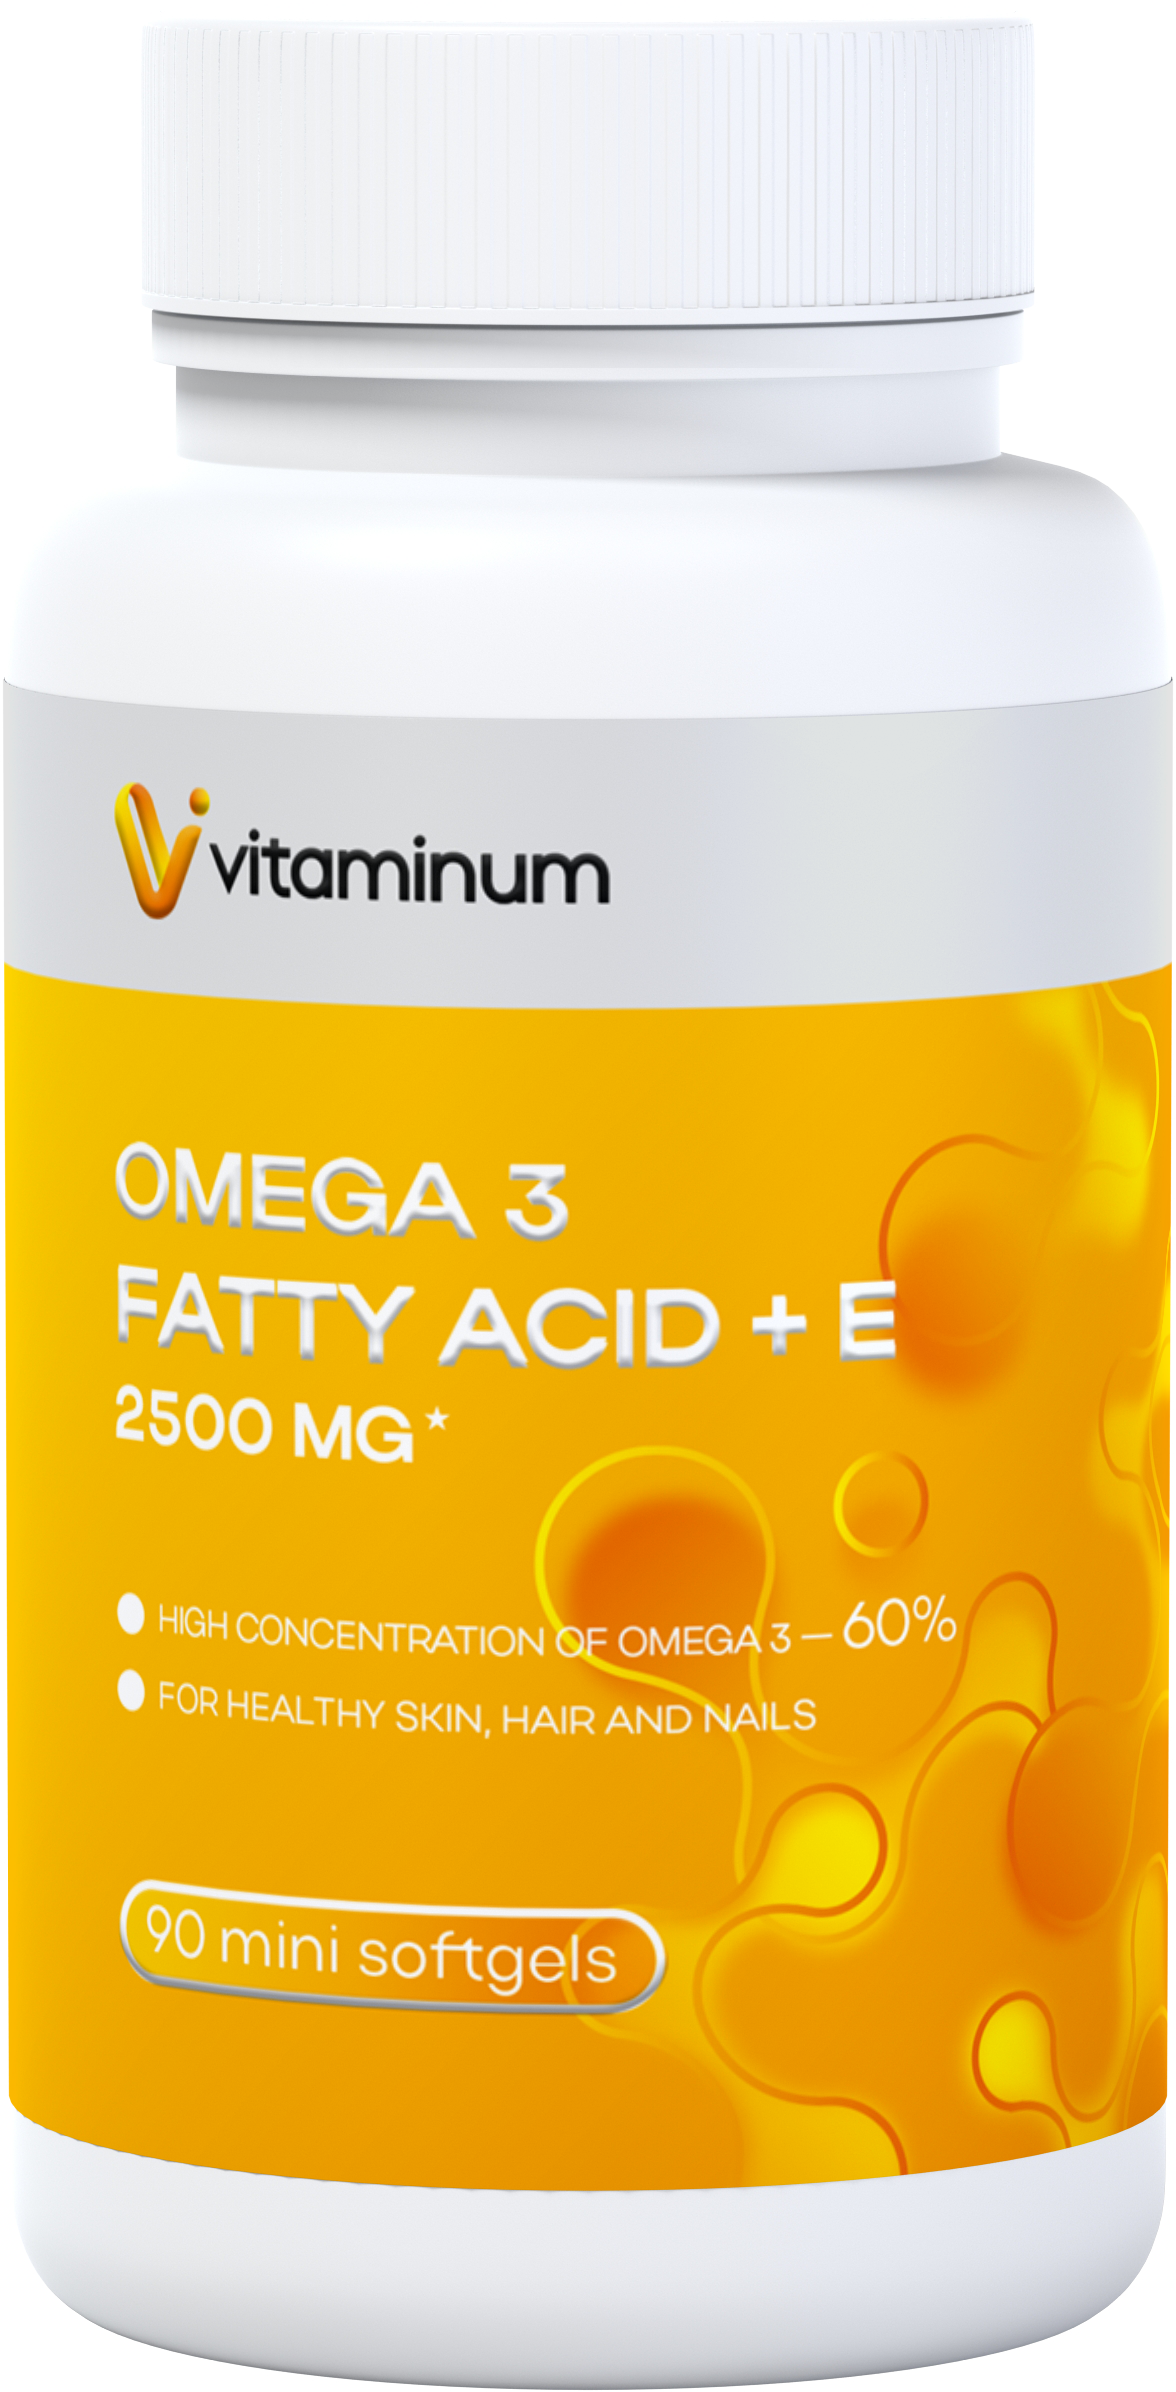  Vitaminum ОМЕГА 3 60% + витамин Е (2500 MG*) 90 капсул 700 мг   в Великих Луках